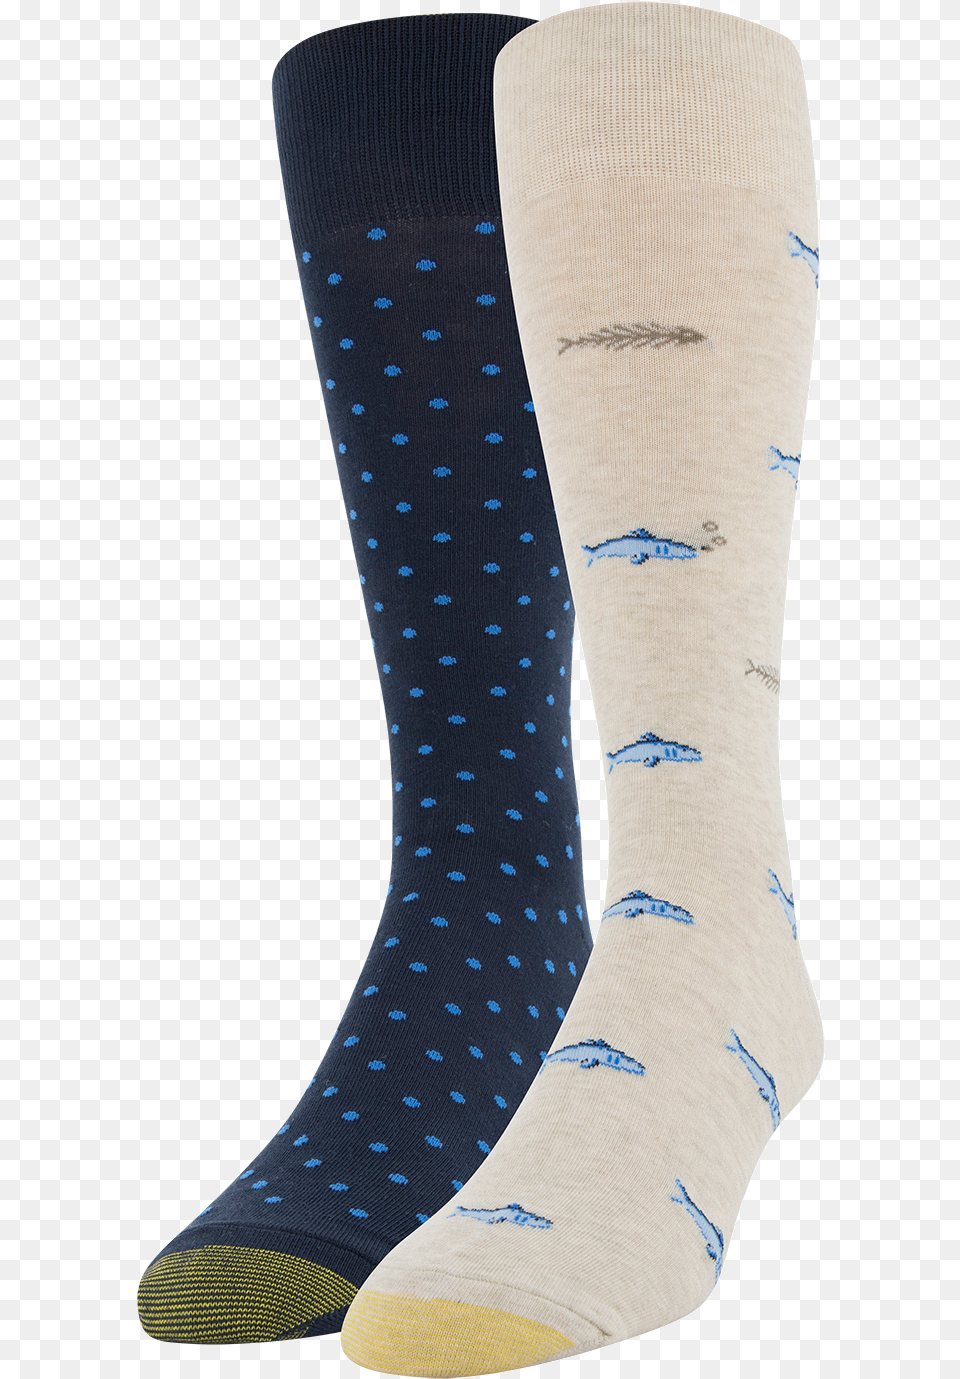 Sock, Clothing, Hosiery Png Image